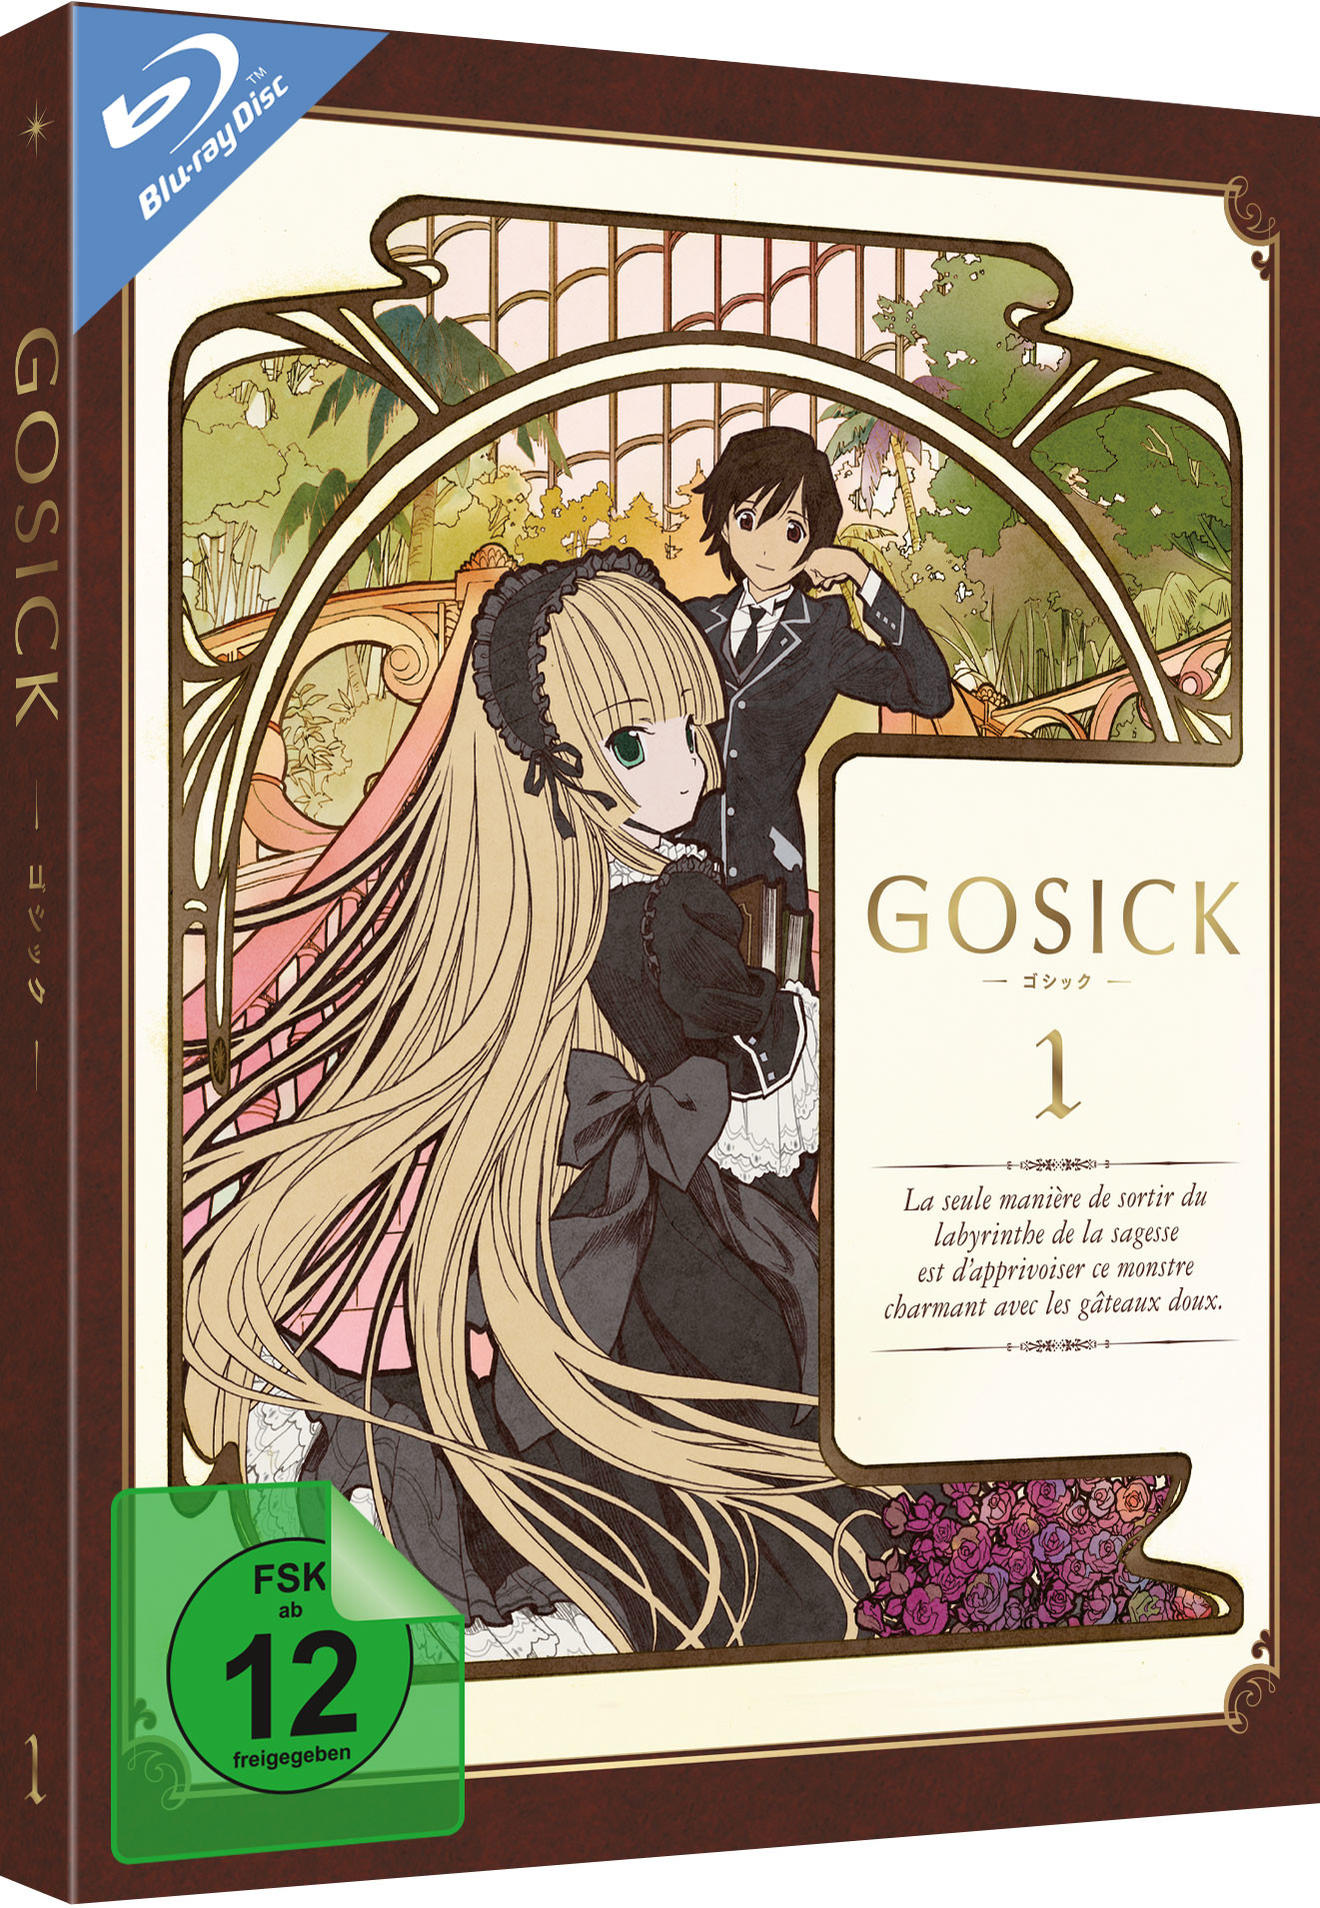 1-6) (Ep. Gosick 1 Vol. Blu-ray